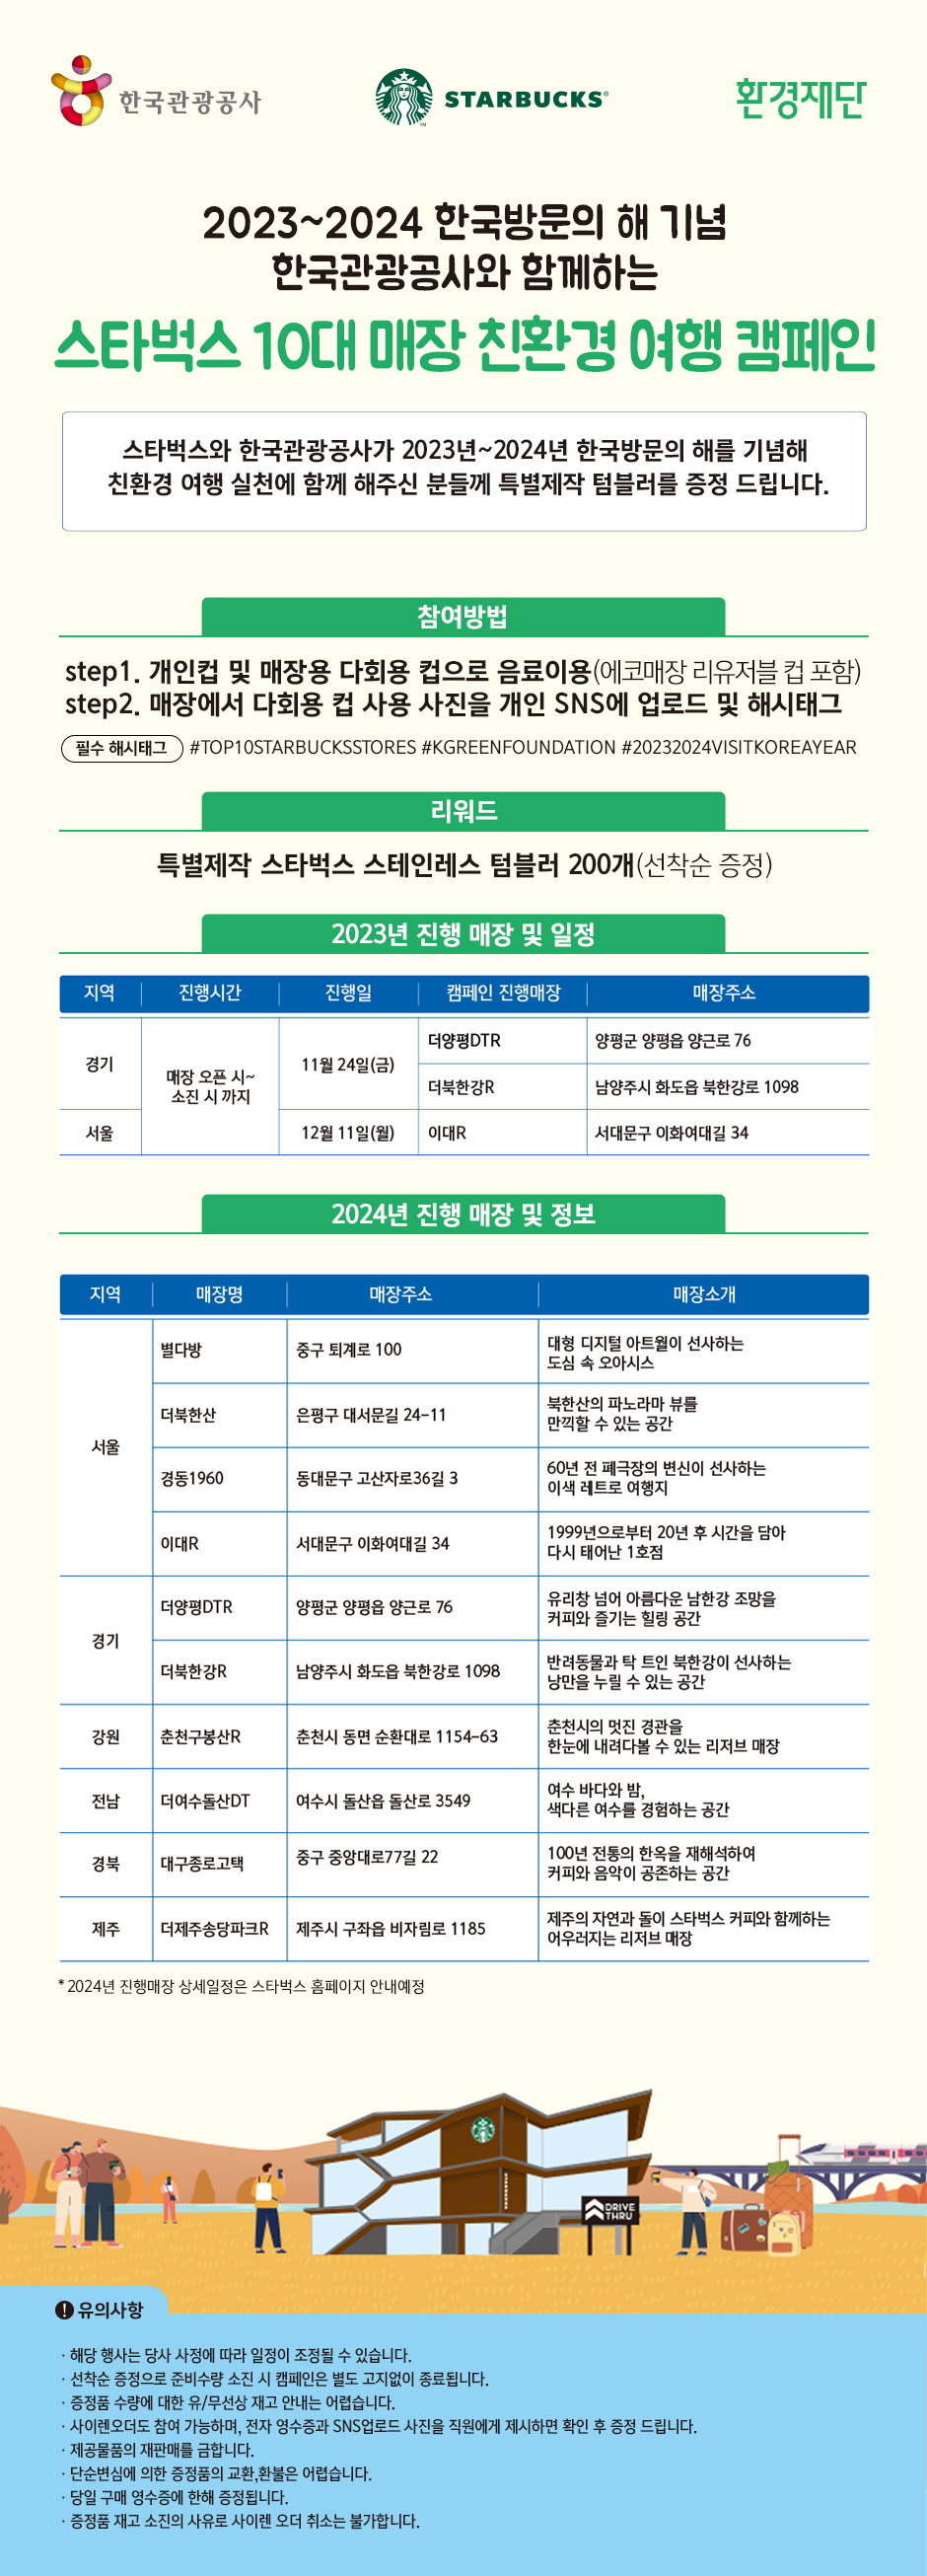 한국관광공사×스타벅스 협업 친환경 여행 캠페인 안내